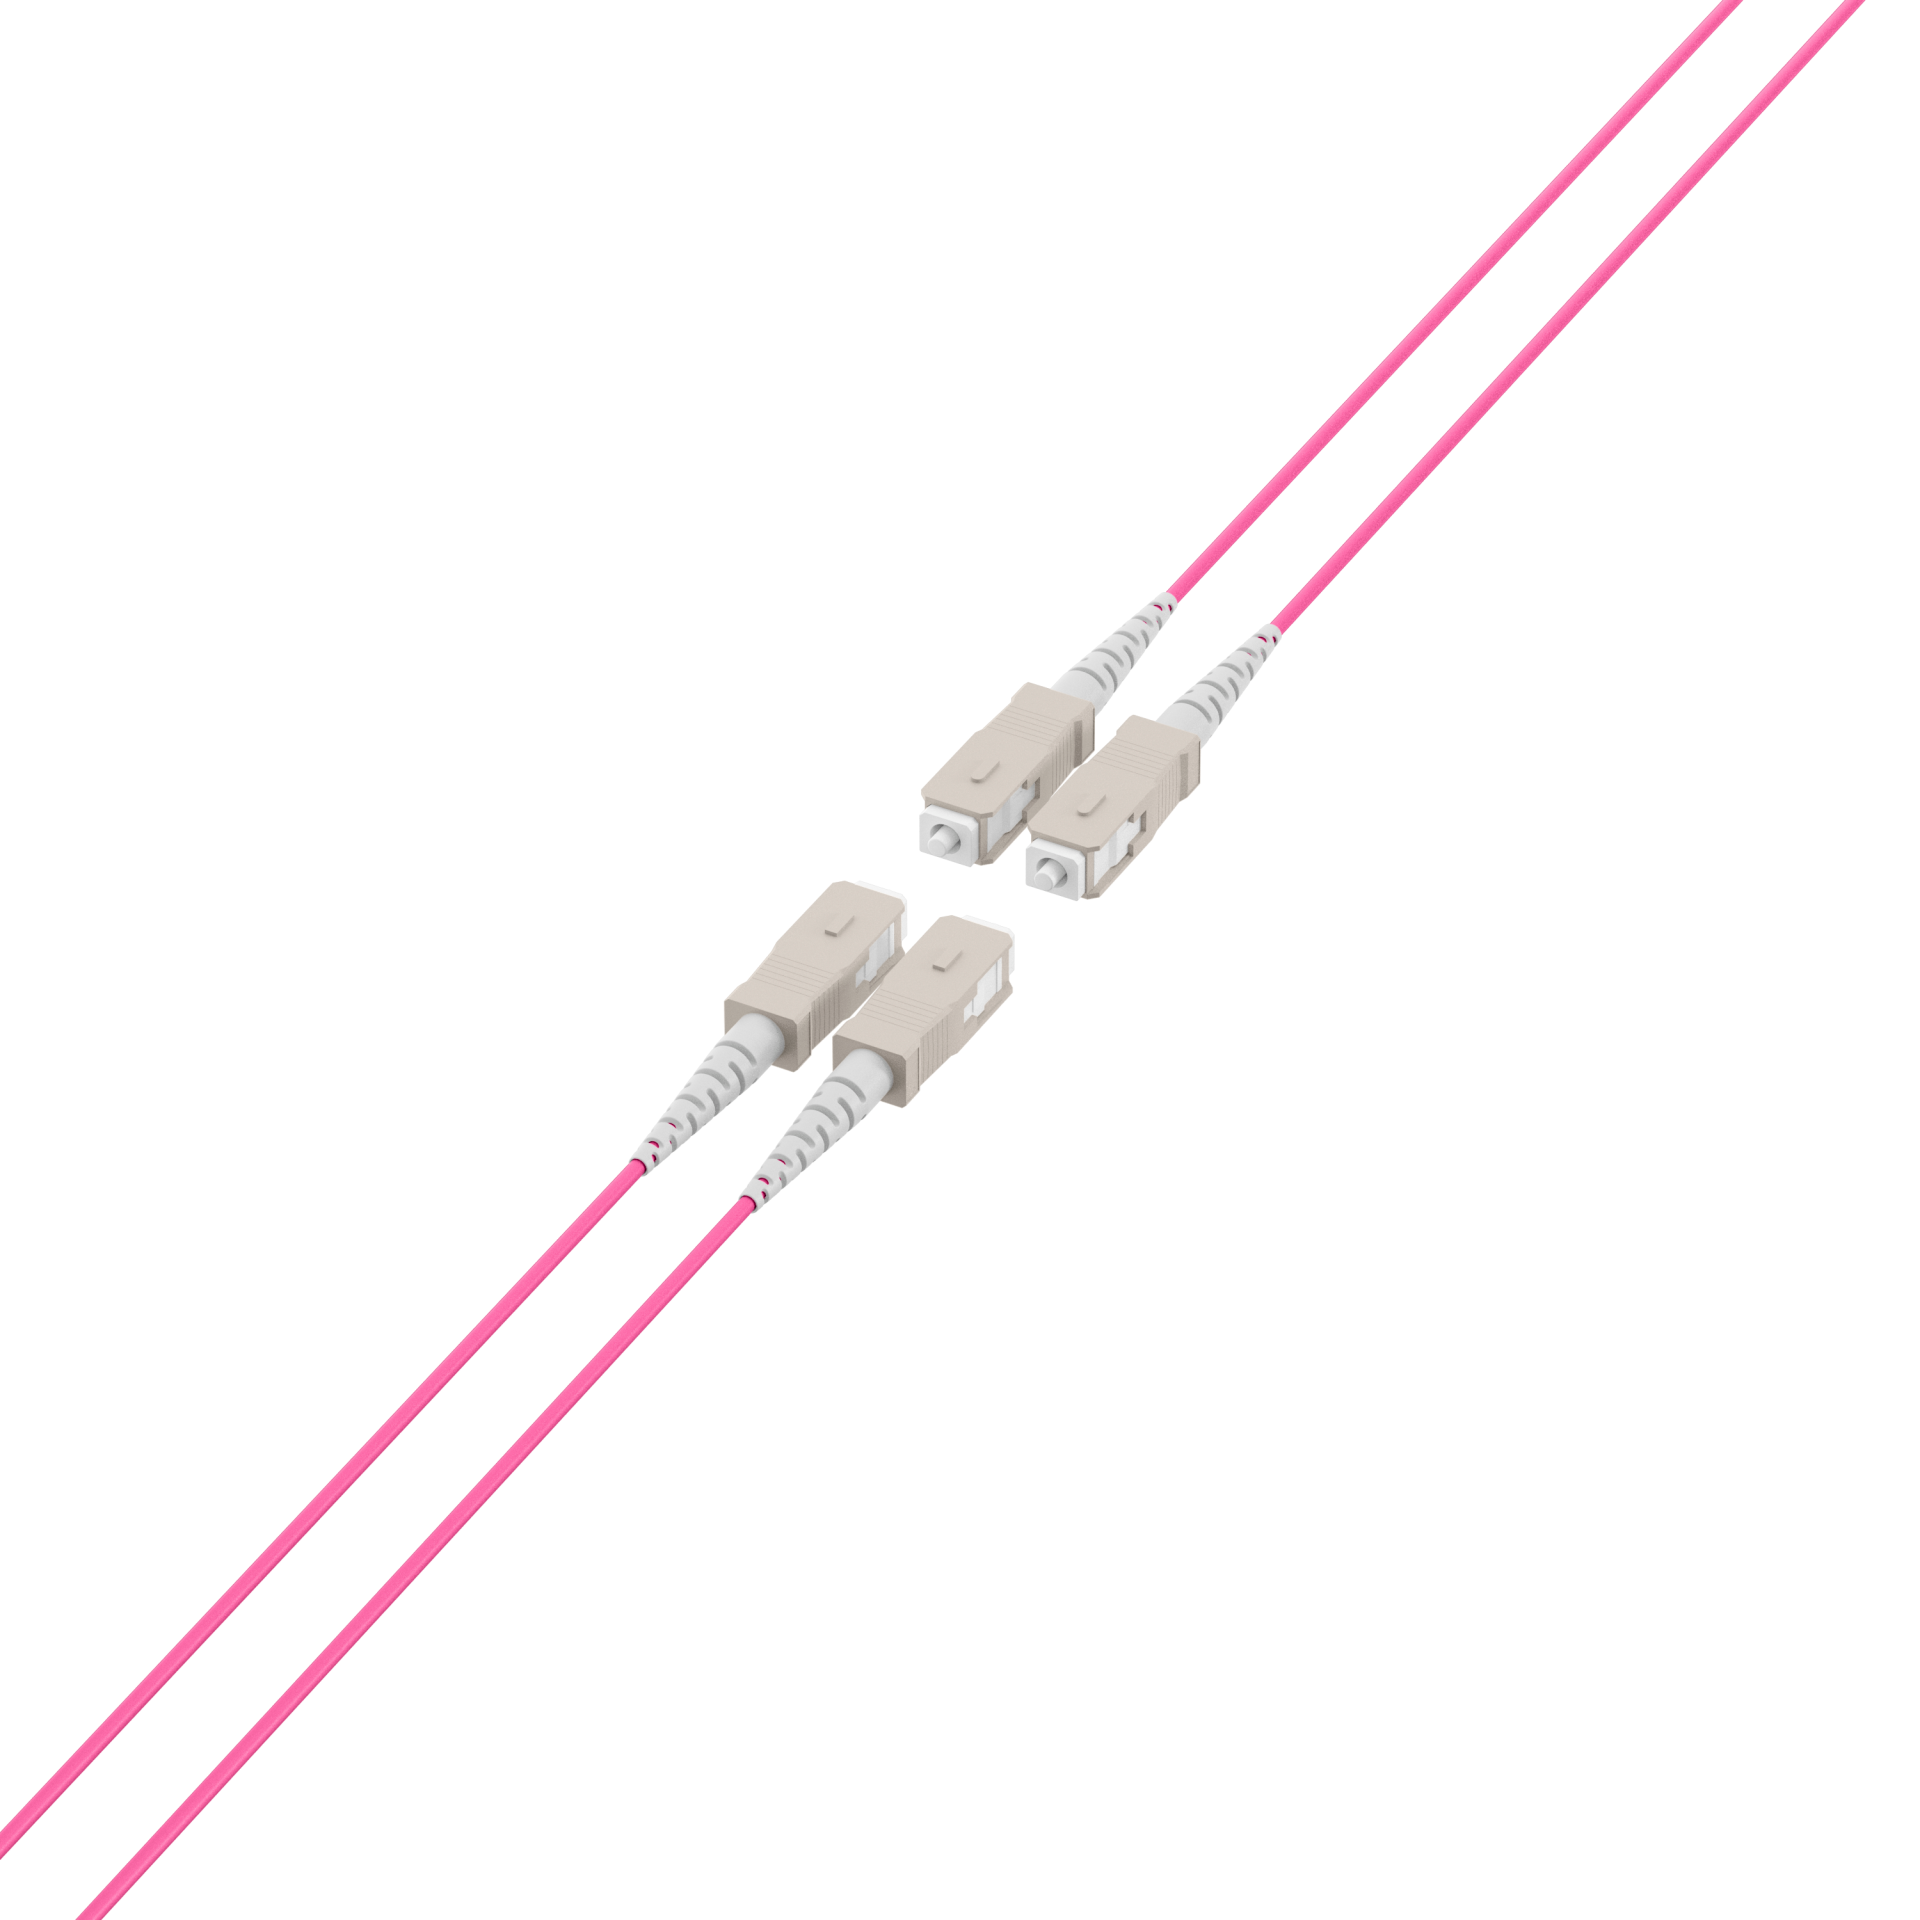 Trunk cable U-DQ(ZN)BH OM4 4G (1x4) SC-SC,160m Dca LSZH